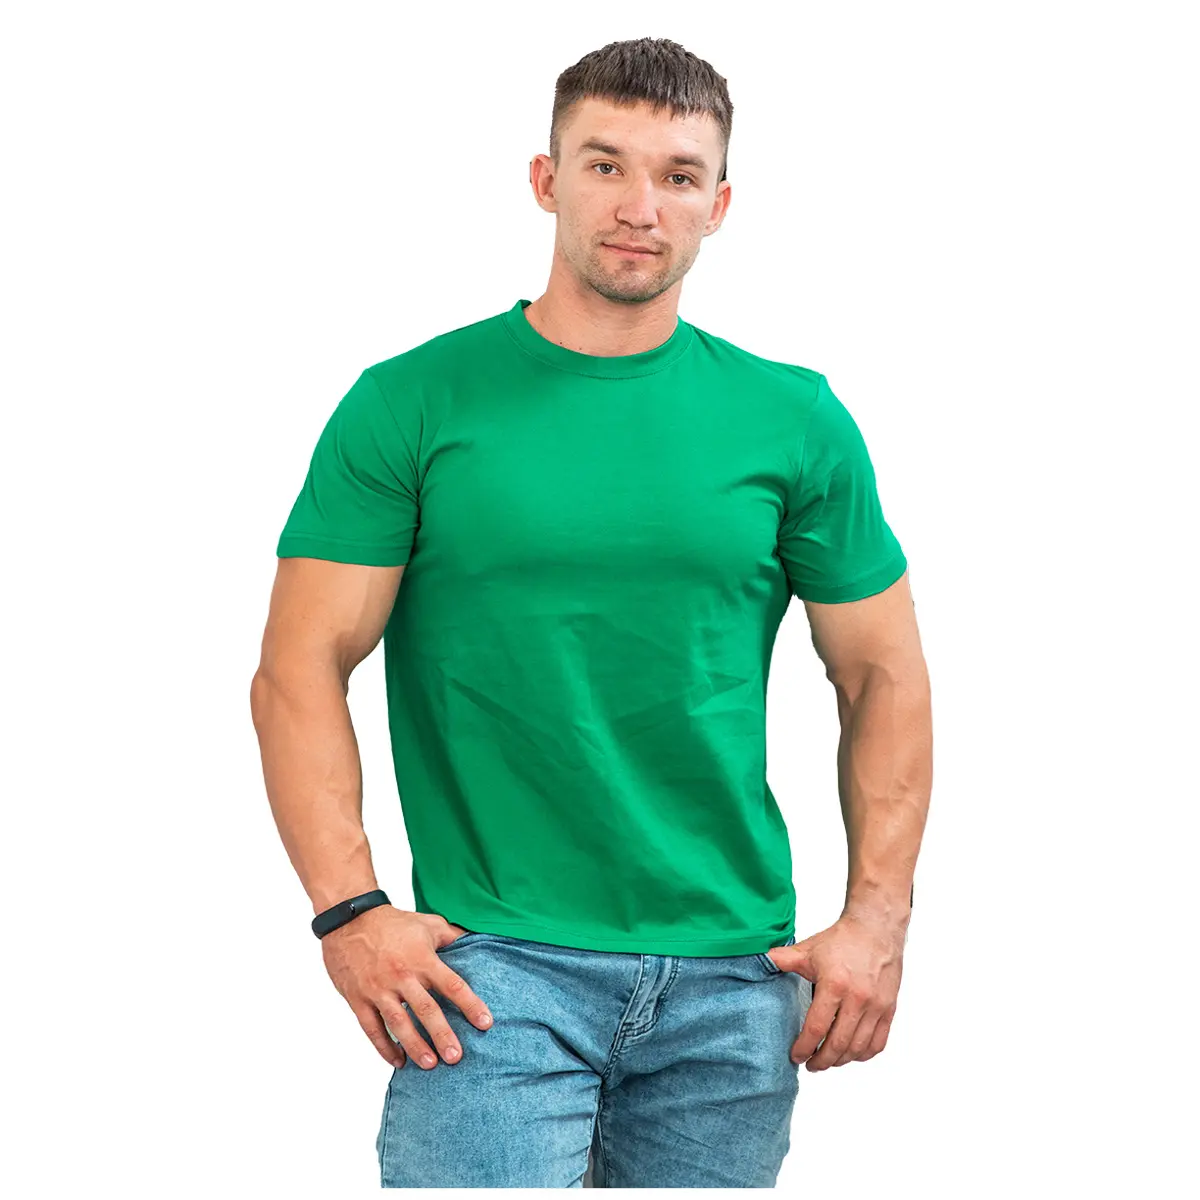 % 100% pamuk güvenilir tedarikçi pamuklu t-shirt yapılmış erkekler için en kaliteli t-shirt